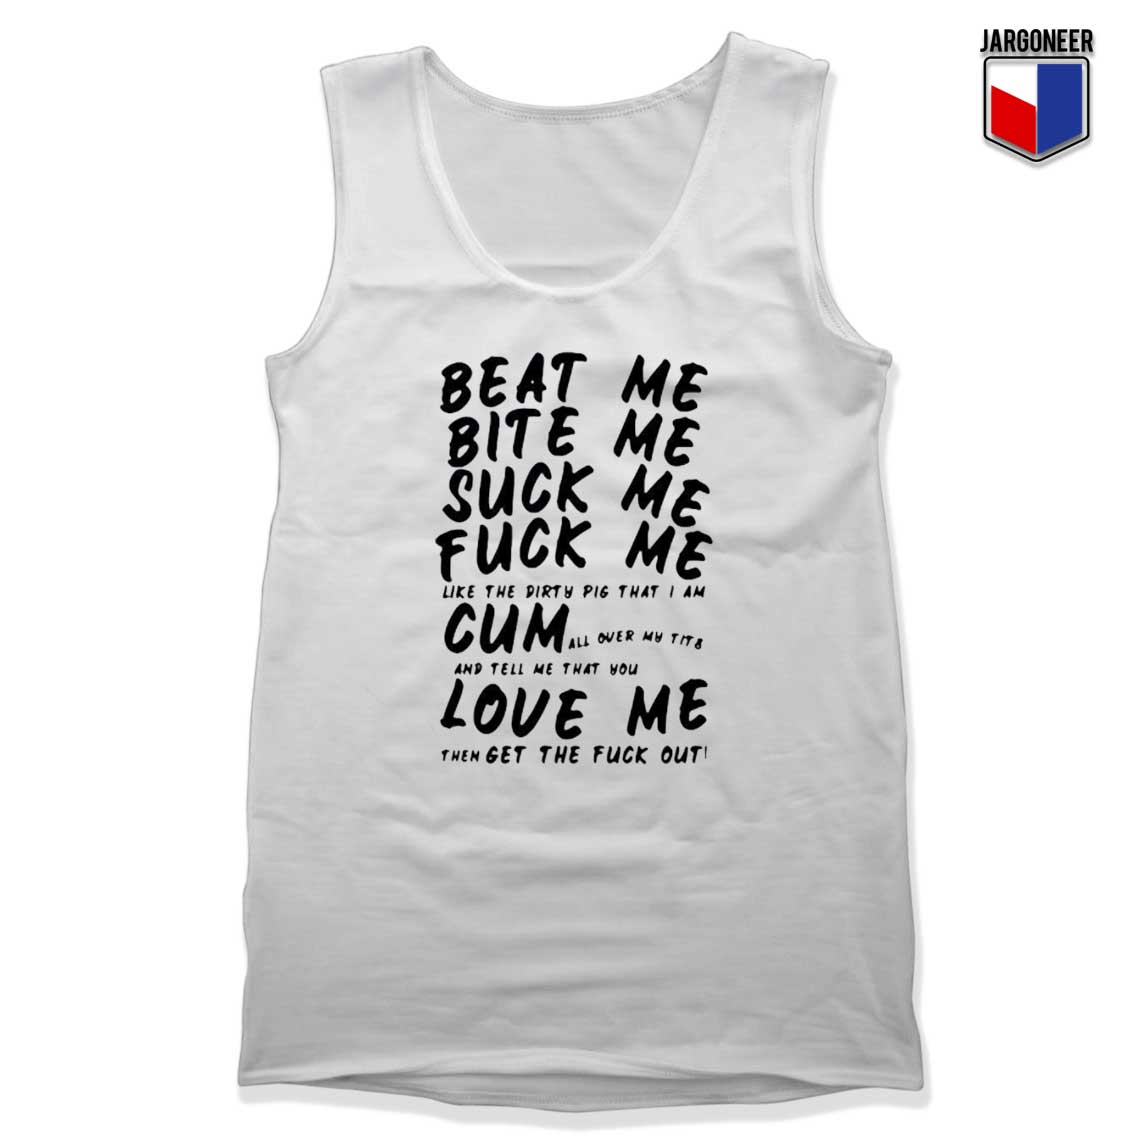 Beat Me Bite Me Suck Me Fuck Me Tank Top - Shop Unique Graphic Cool Shirt Designs